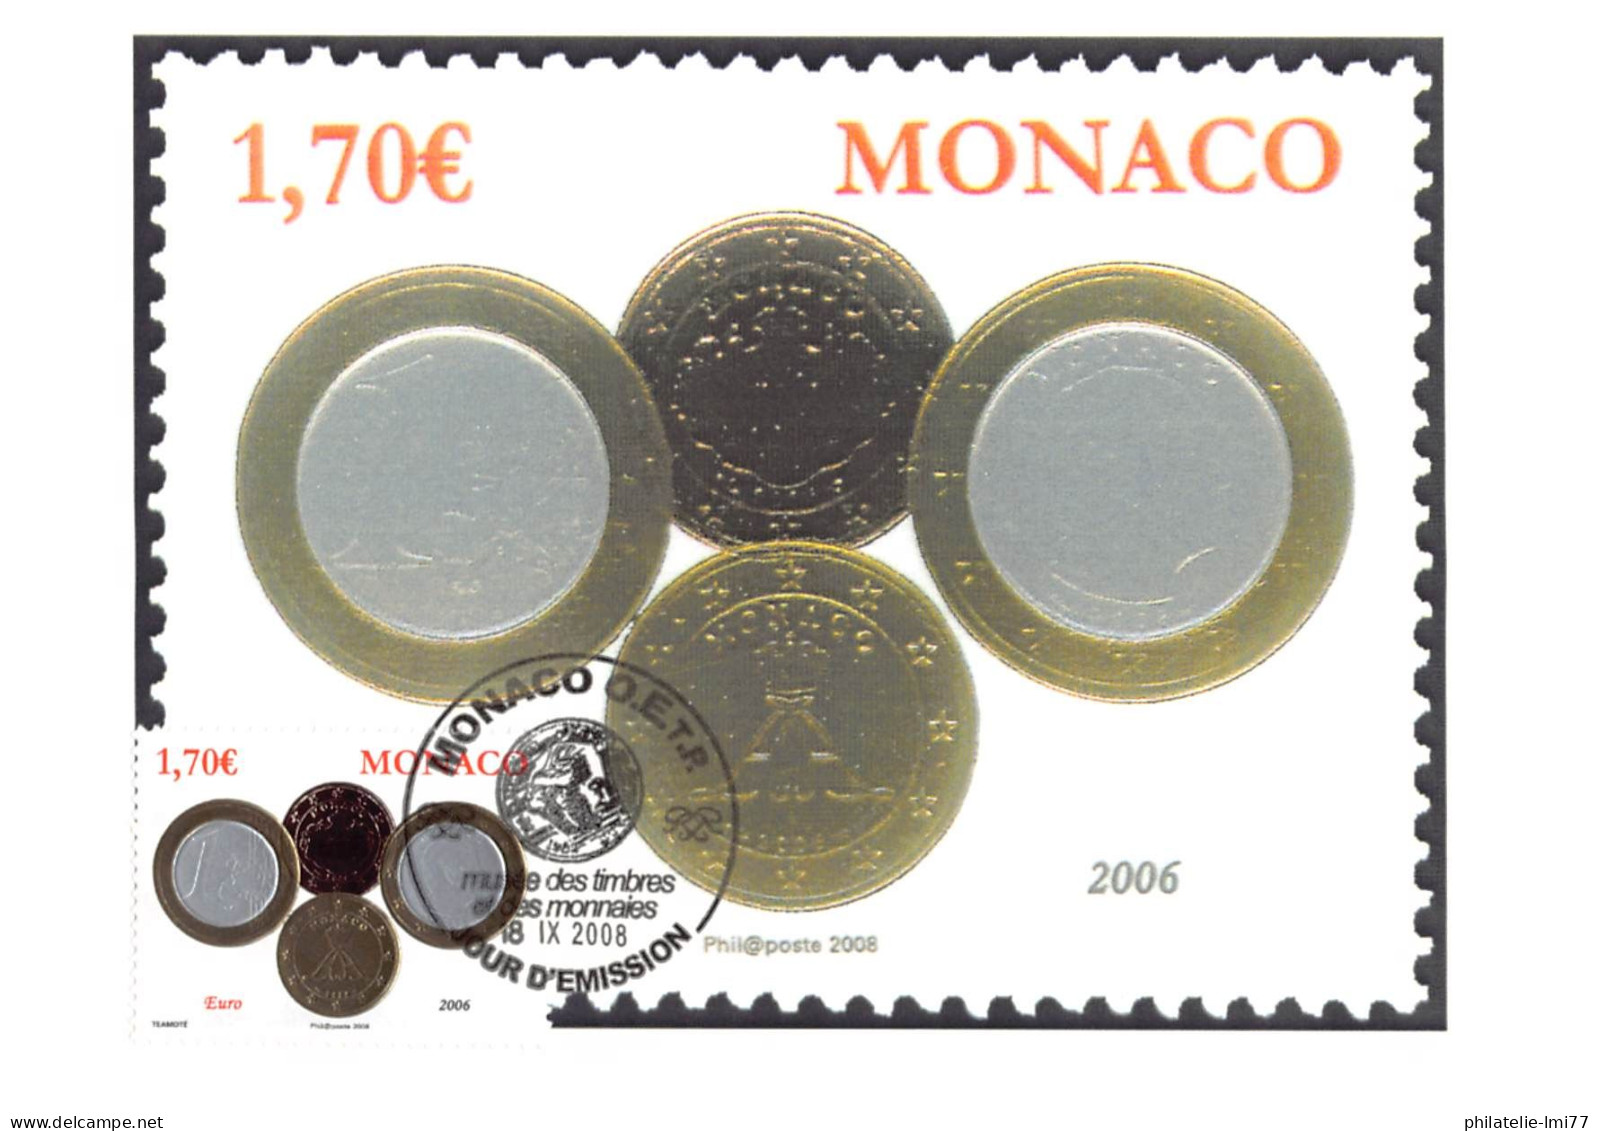 CM CEF - Série Numismatique (6 Cartes), Oblit 18/9/08 - Maximumkarten (MC)